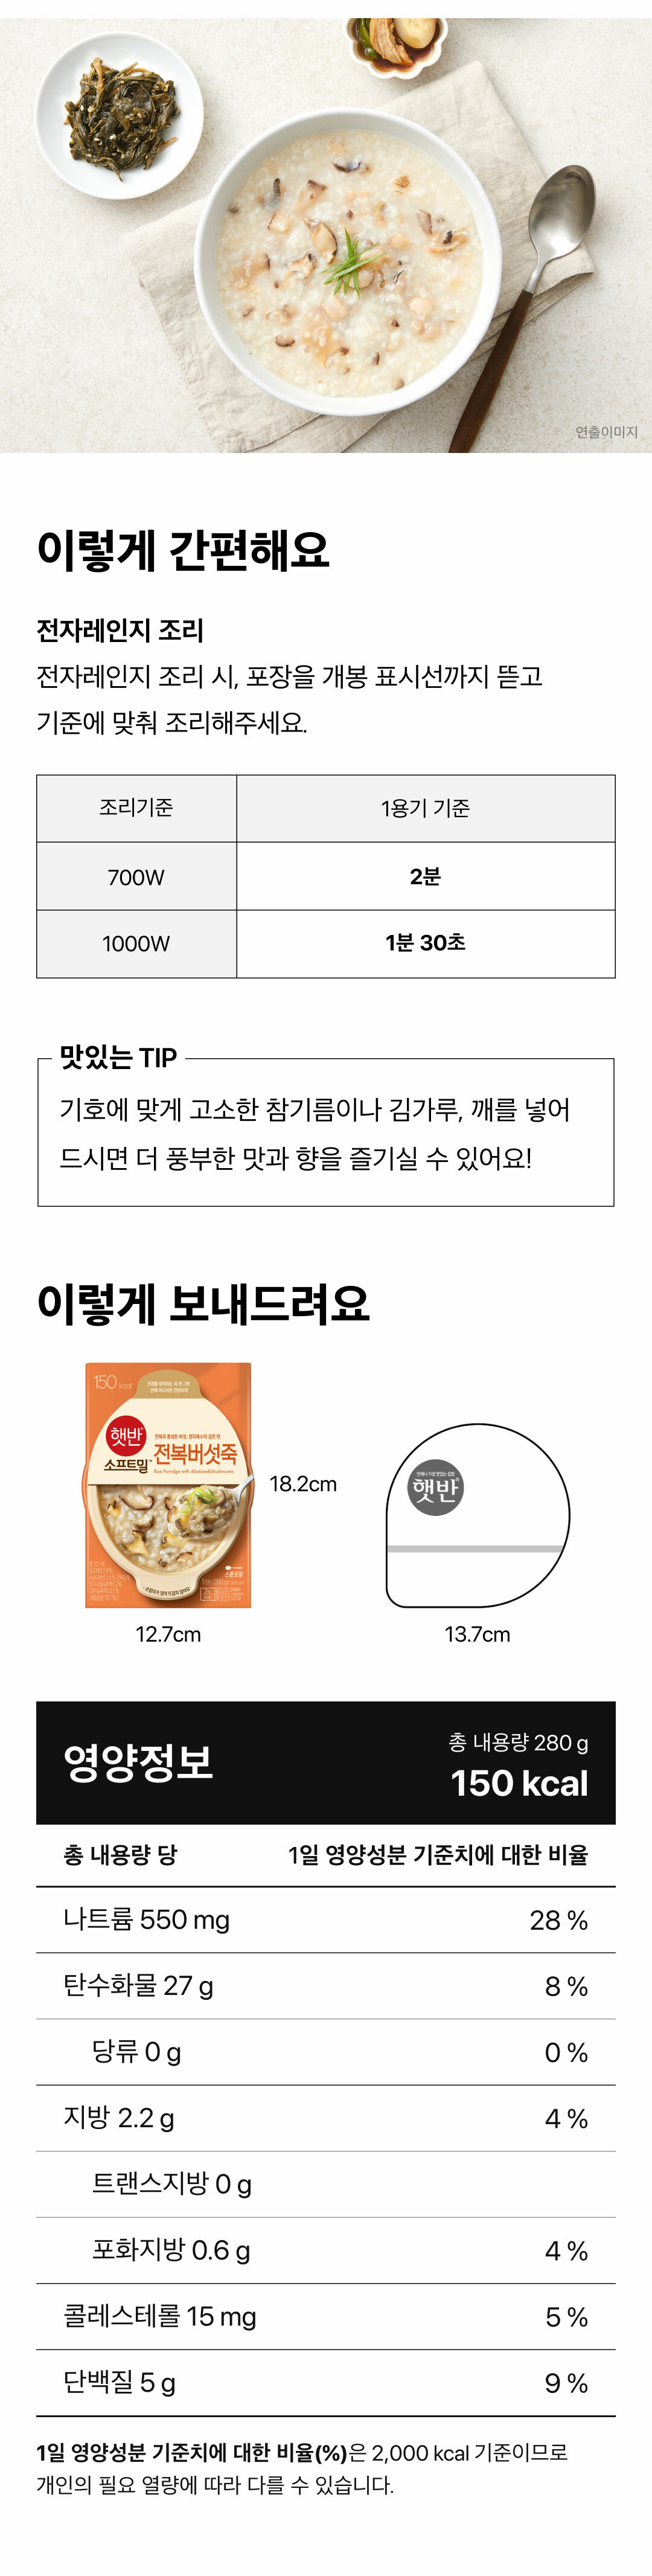 햇반소프트밀-전복버섯죽-280g-1000140151852